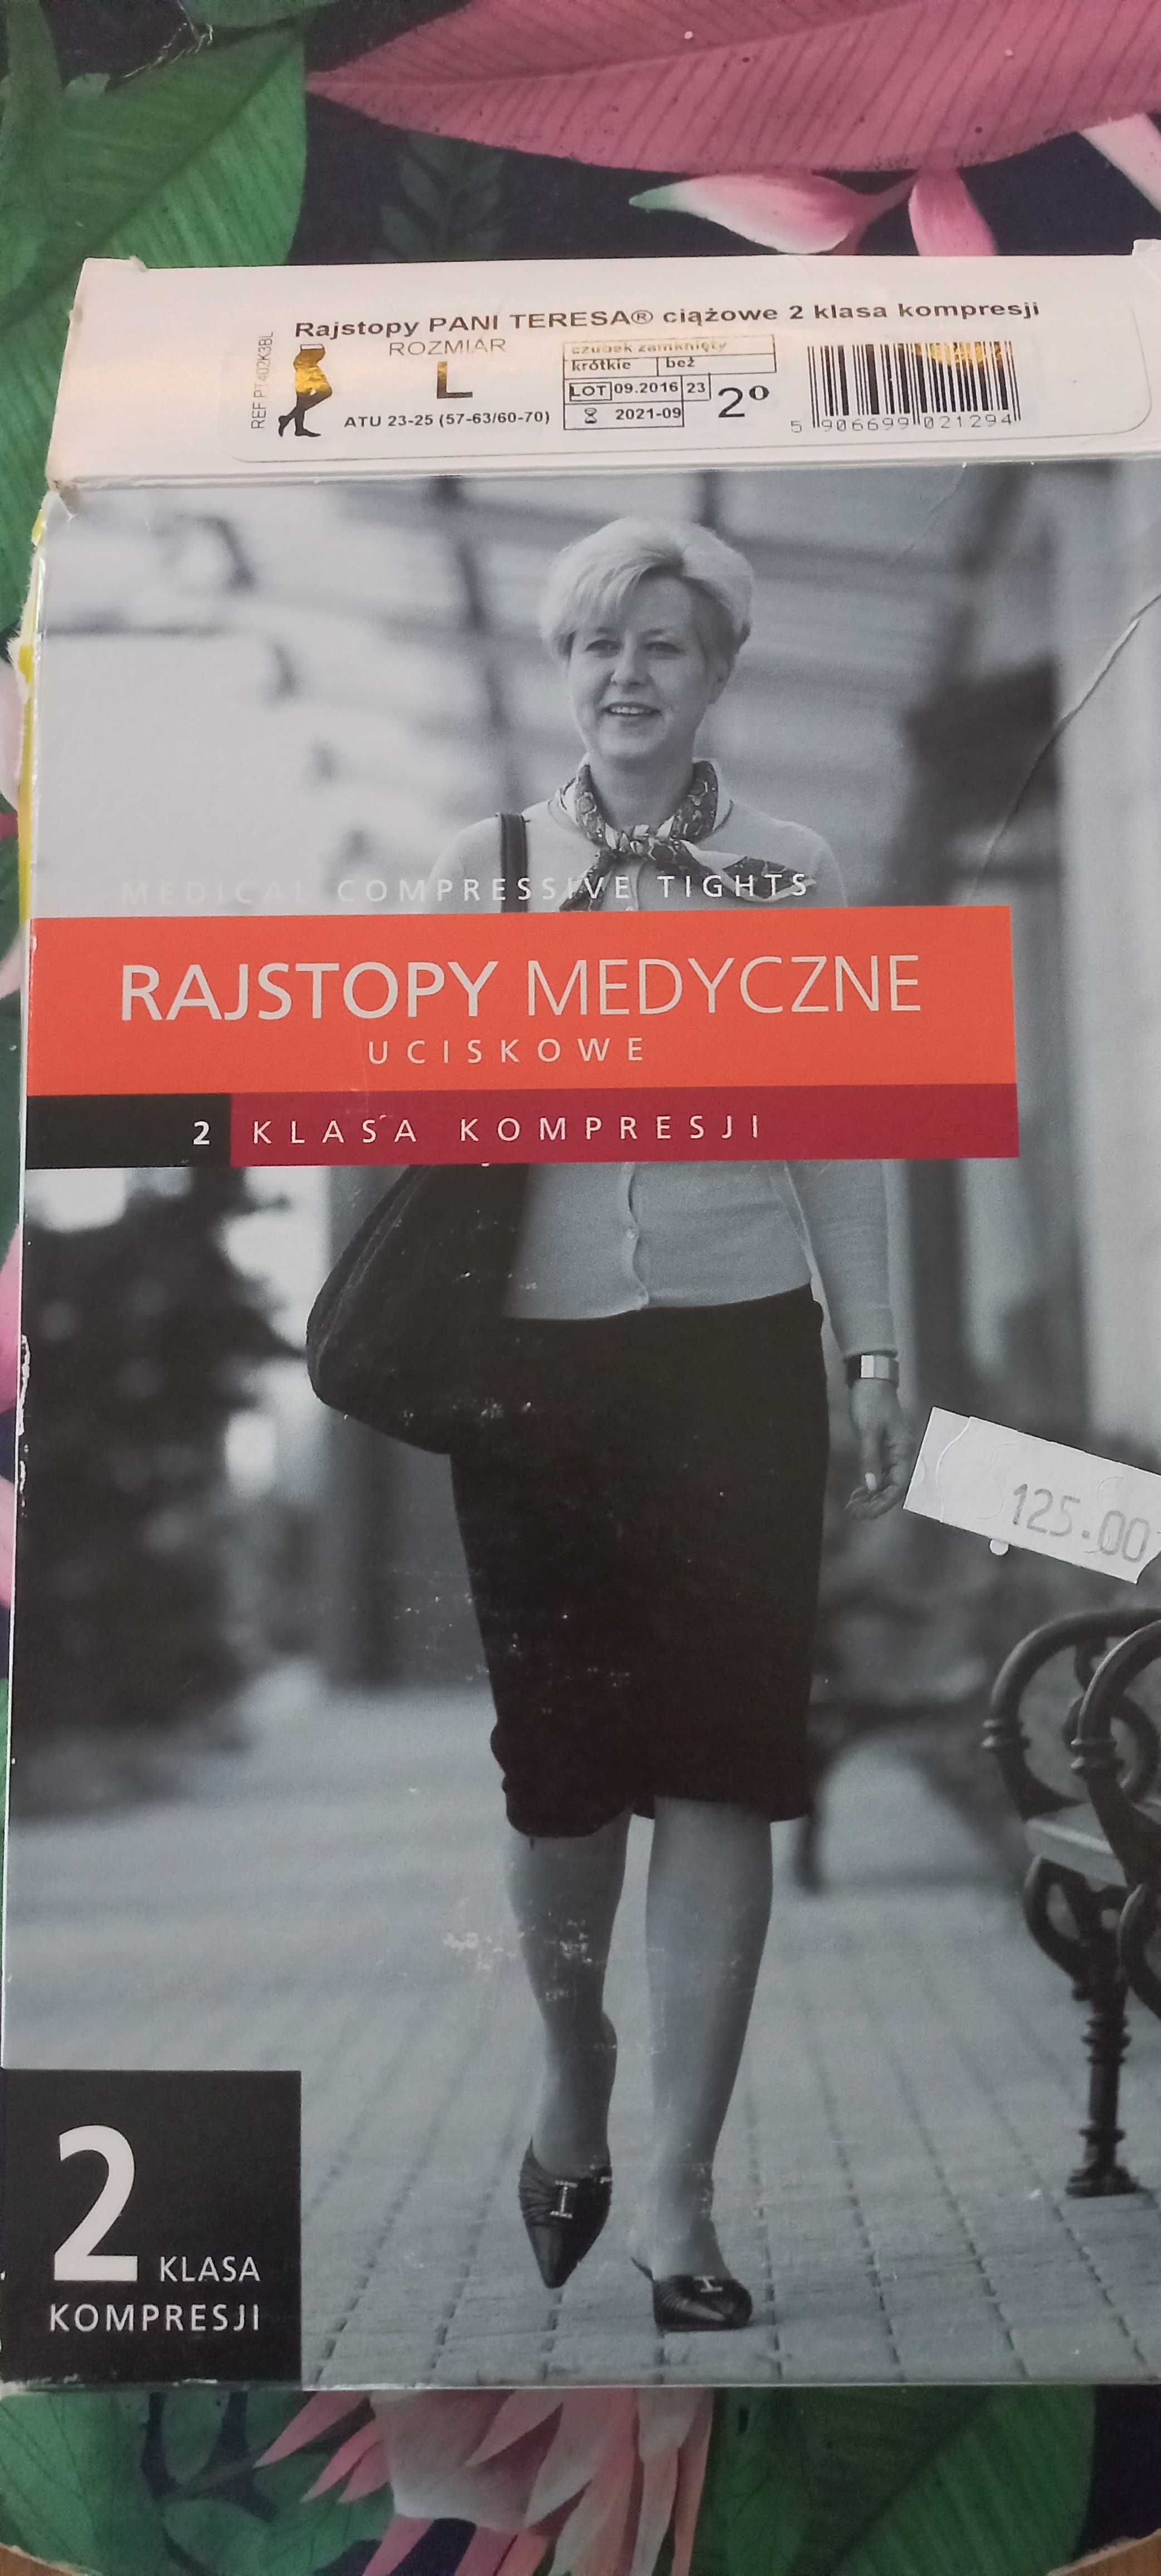 Pani Teresa Rajstopy medyczne uciskowe ciążowe 2 stopień kompresji beż